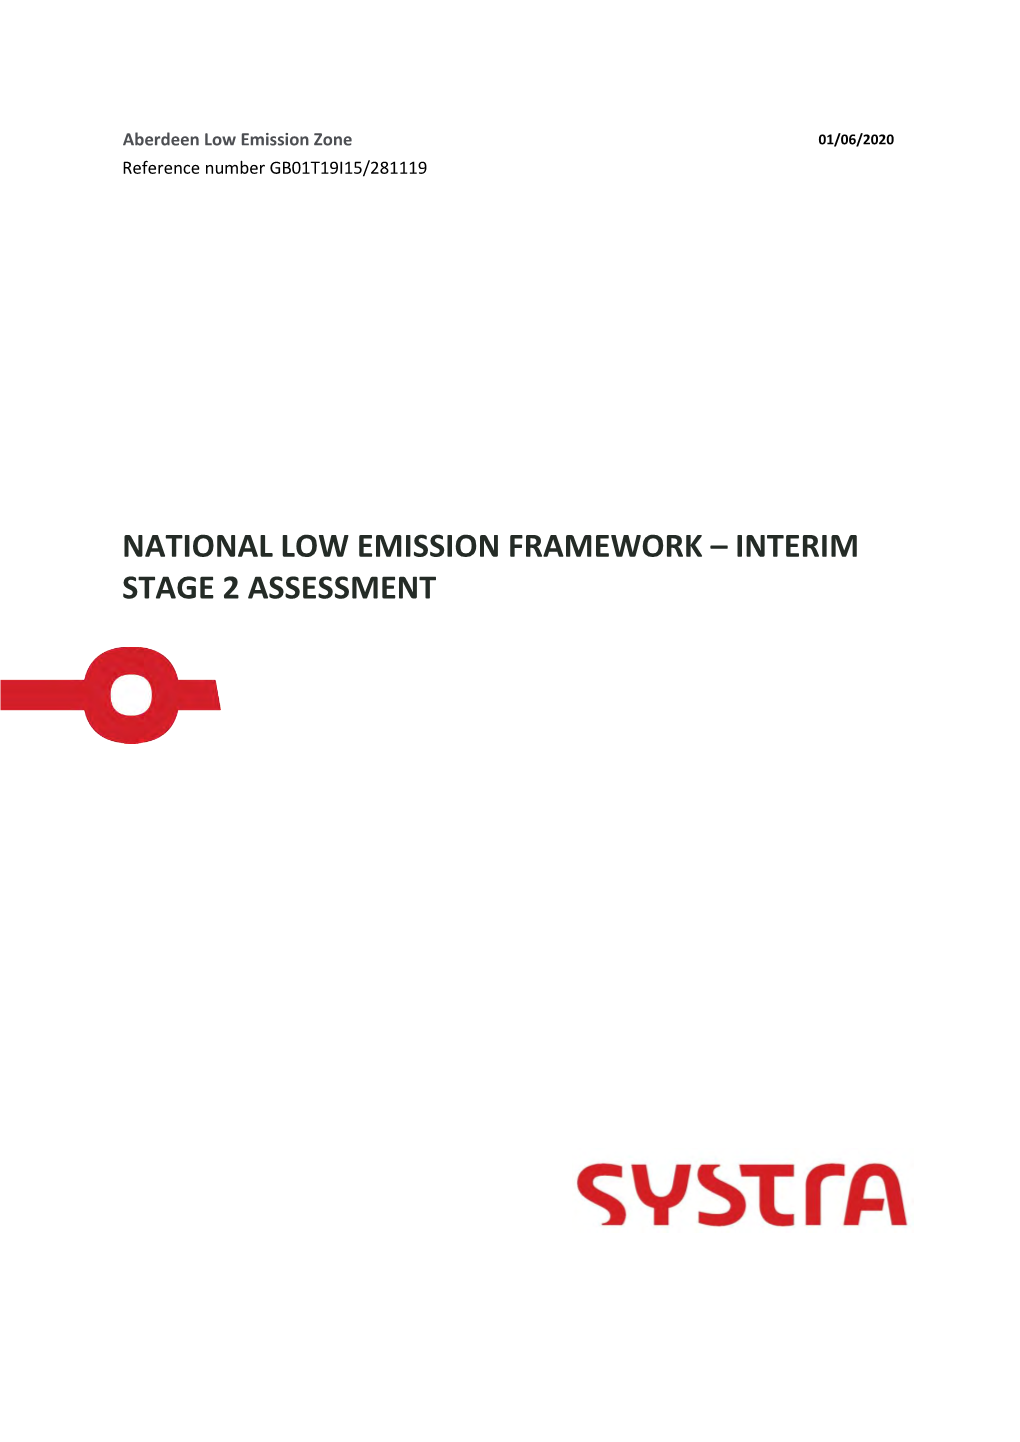 National Low Emission Framework – Interim Stage 2 Assessment